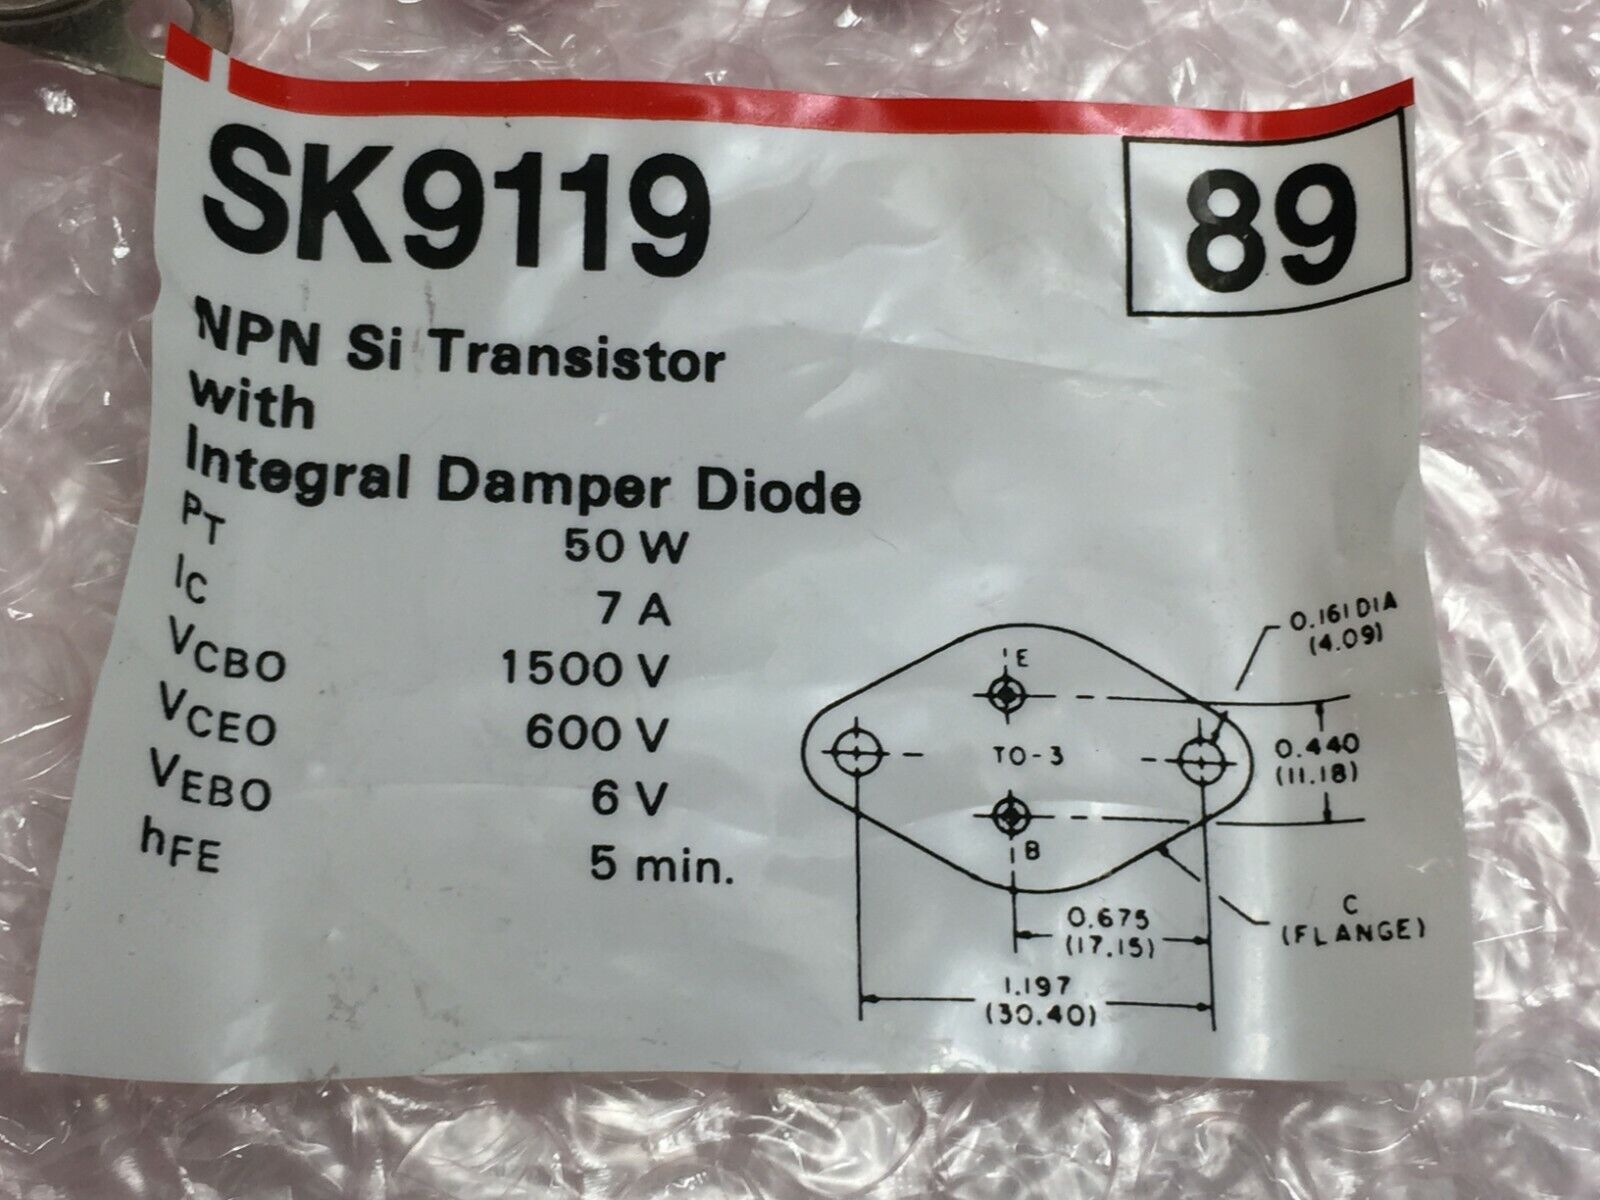 NOS  SK9119 NPN Si Transistors with Integral Damper Diode   Lot of 5